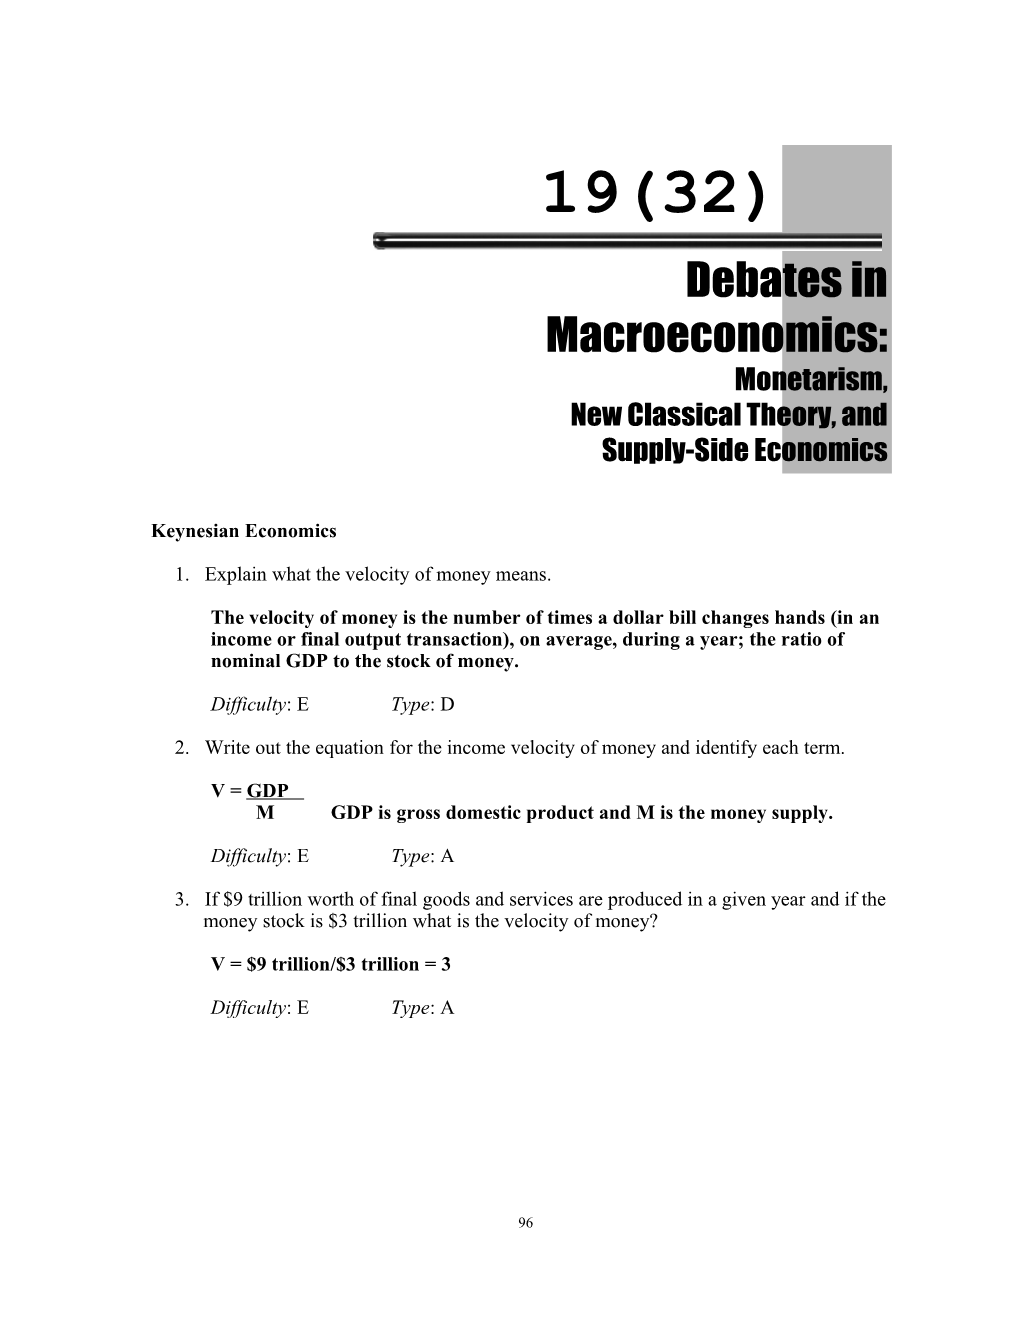 Chapter 19 (32): Debates in Macroeconomics